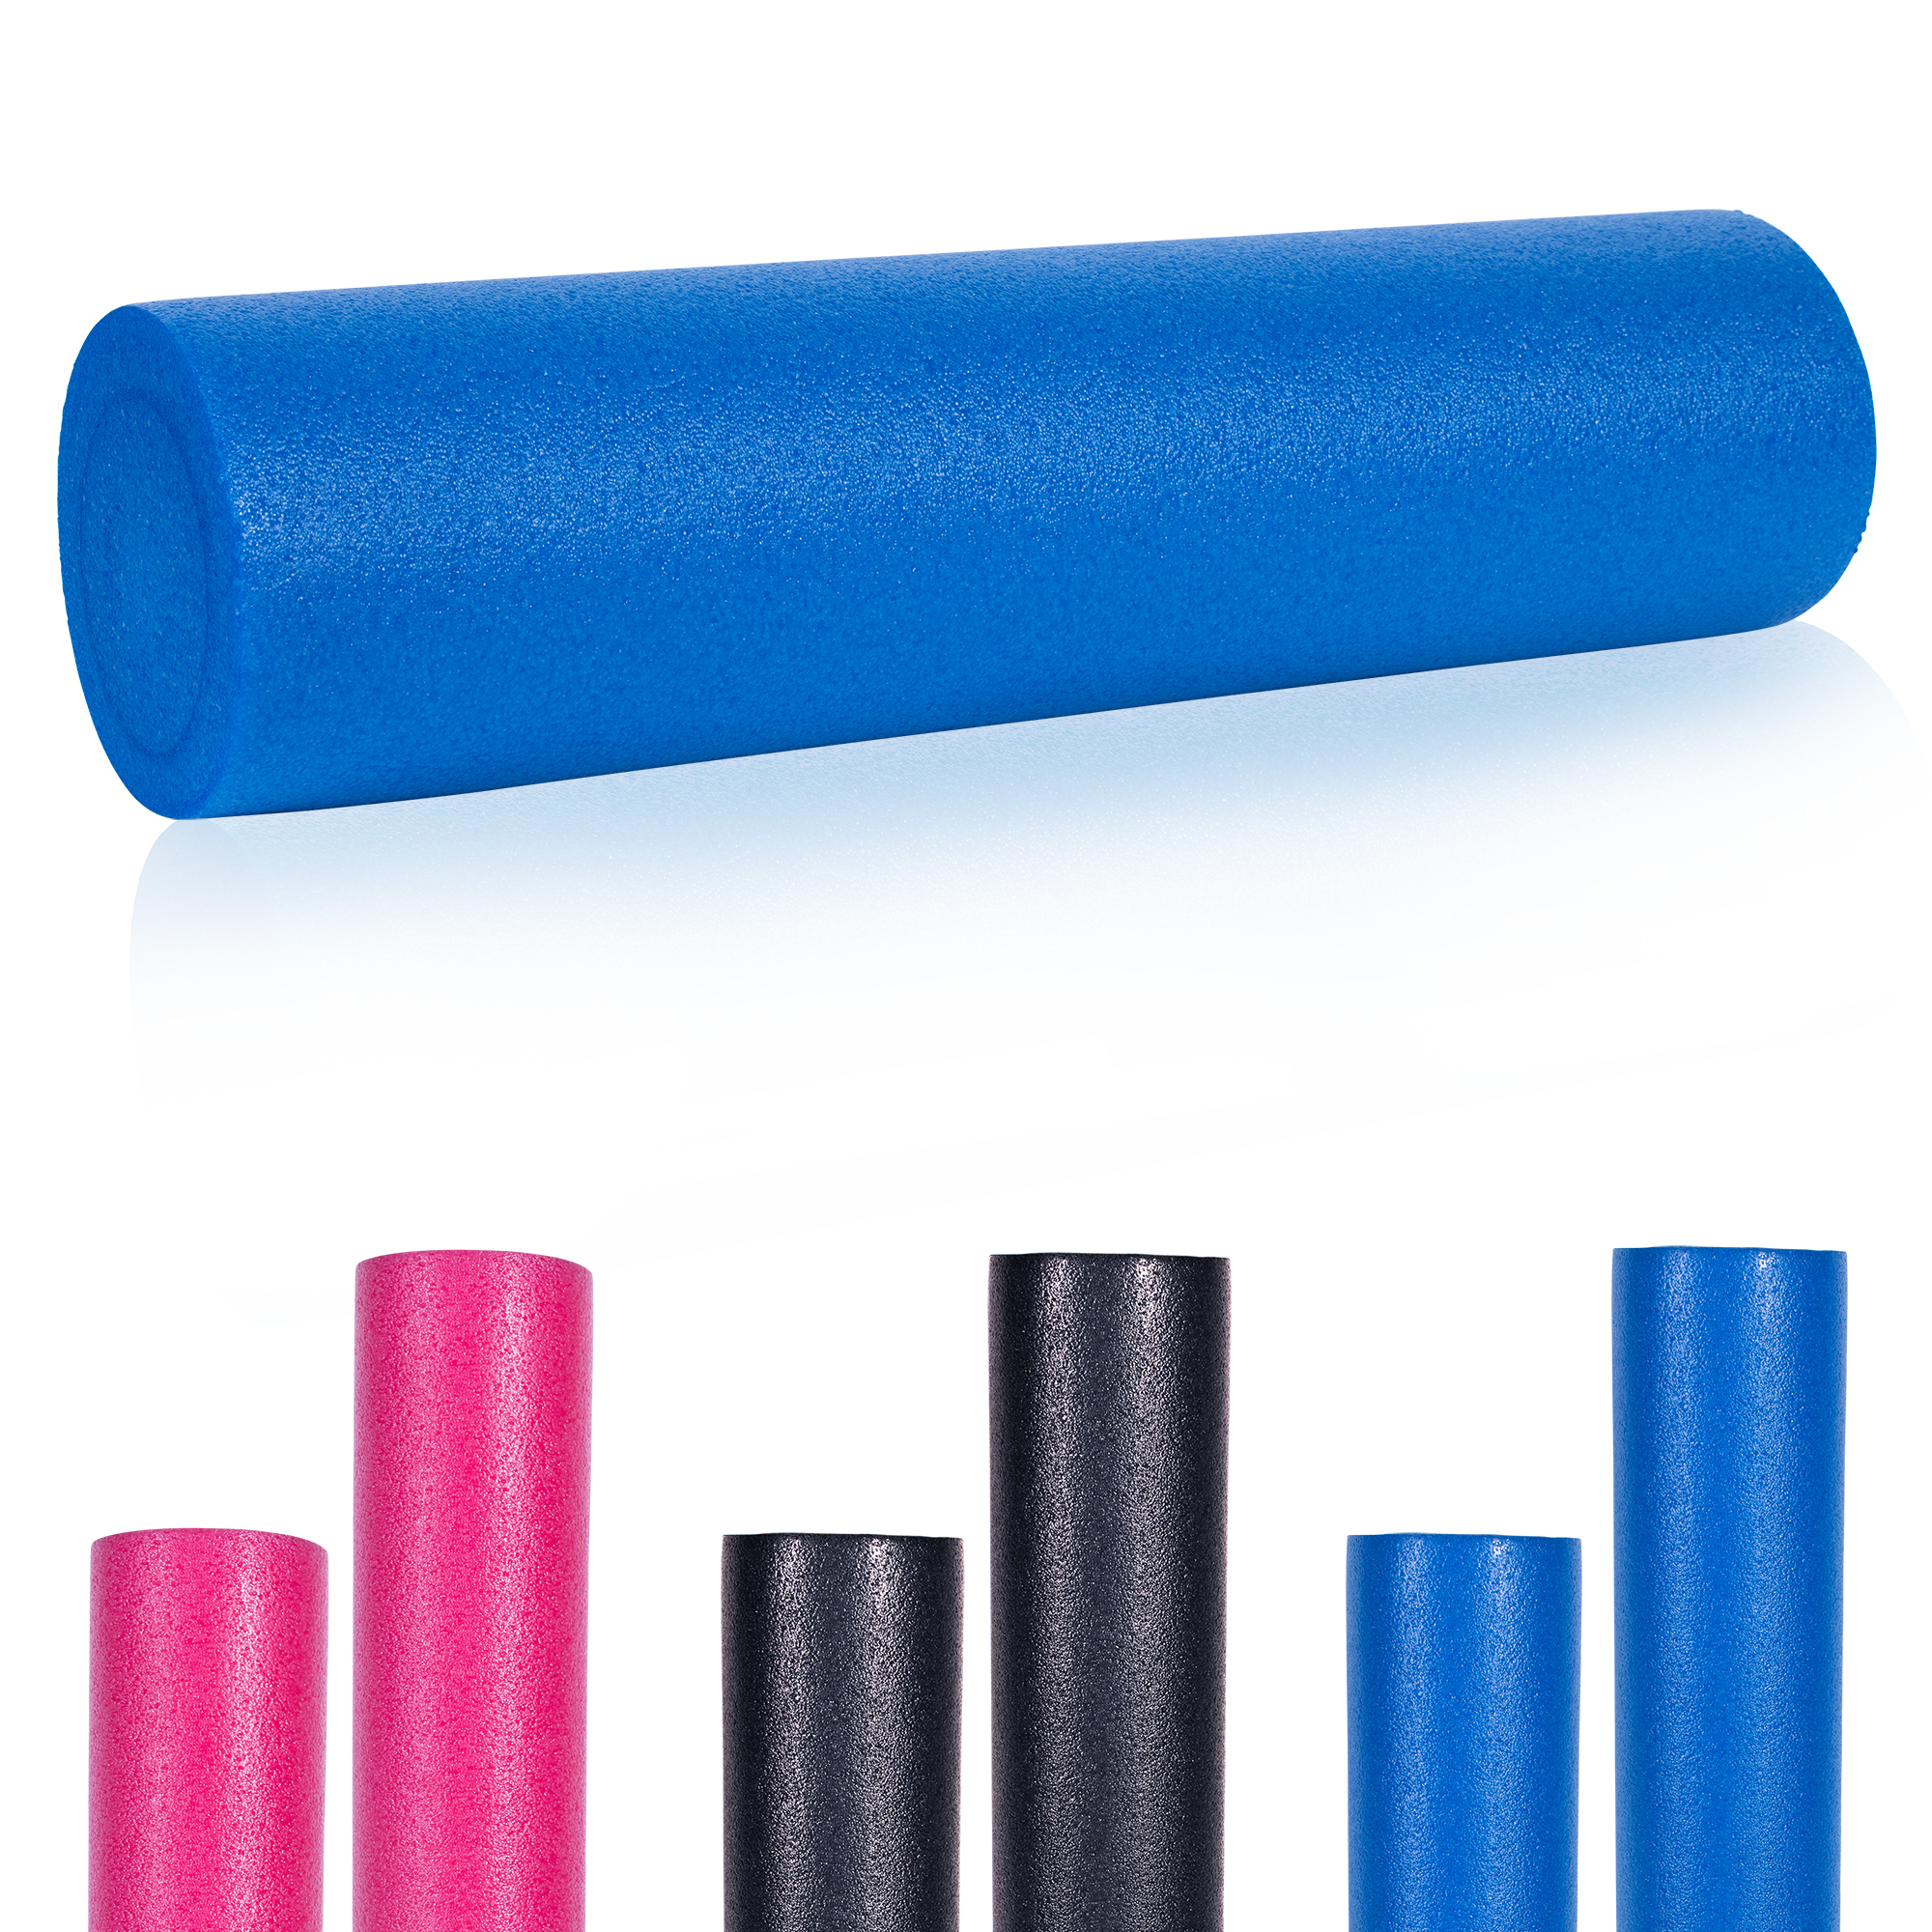 GORILLA SPORTSÂ® Rouleau de Pilates en mousse 60 x 15 cm - Rouleau de yoga pour l'auto-massage et la stimulation des fascias - Coloris bleu